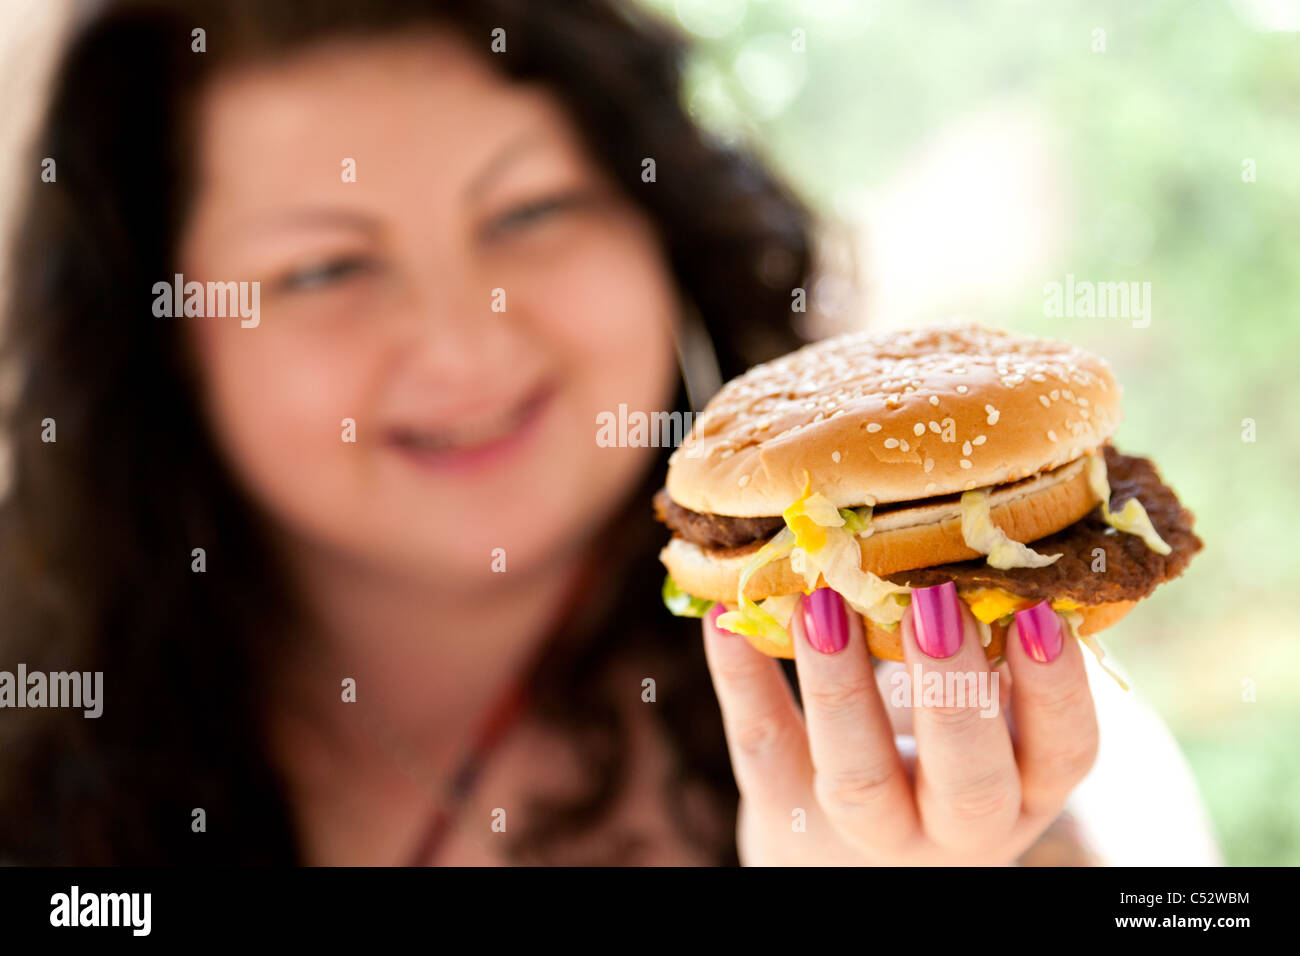 Femme mangeant des aliments gras Banque D'Images